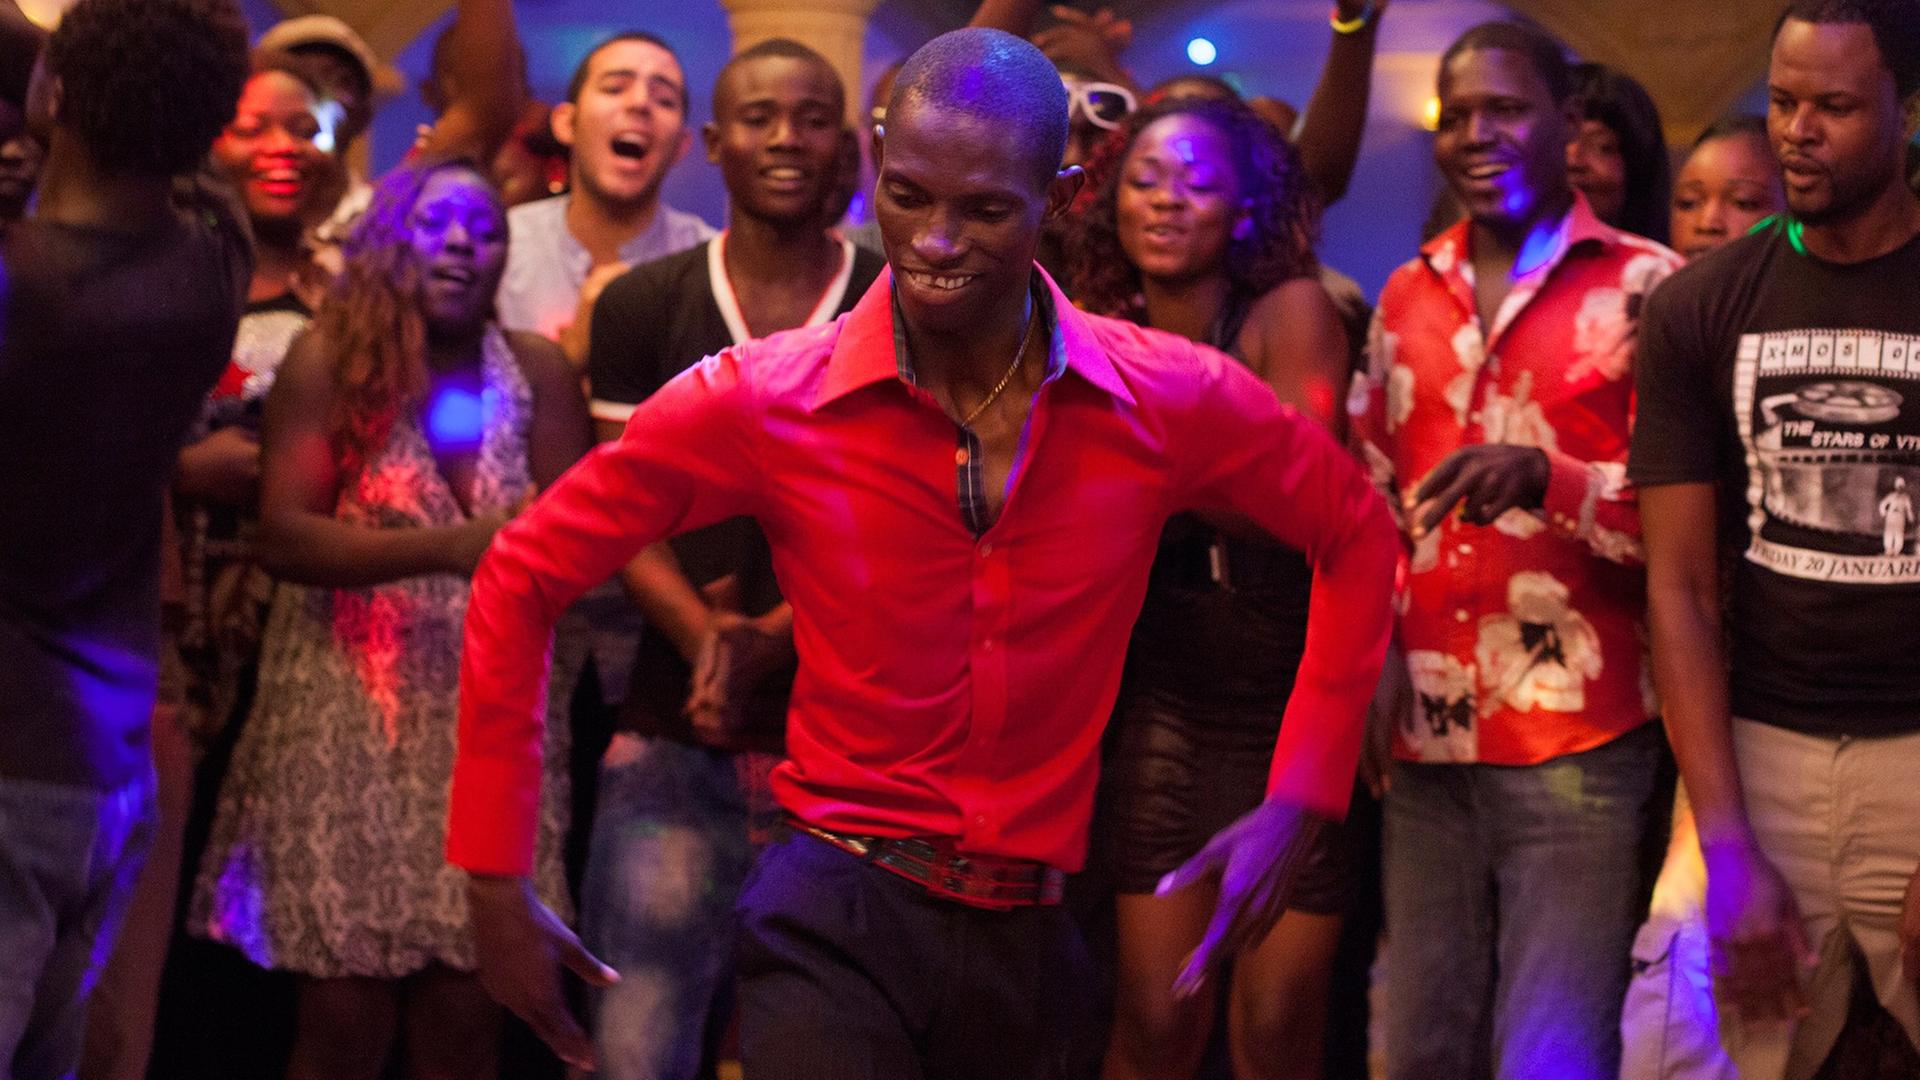 Der Schauspieler Souleymane Deme tanzt als "Grigris" auf der Tanzfläche einer Diskothek in einer Szene des Films "Grigris' Glück" des tschadischen Regisseurs Mahamat-Saleh Haroun.